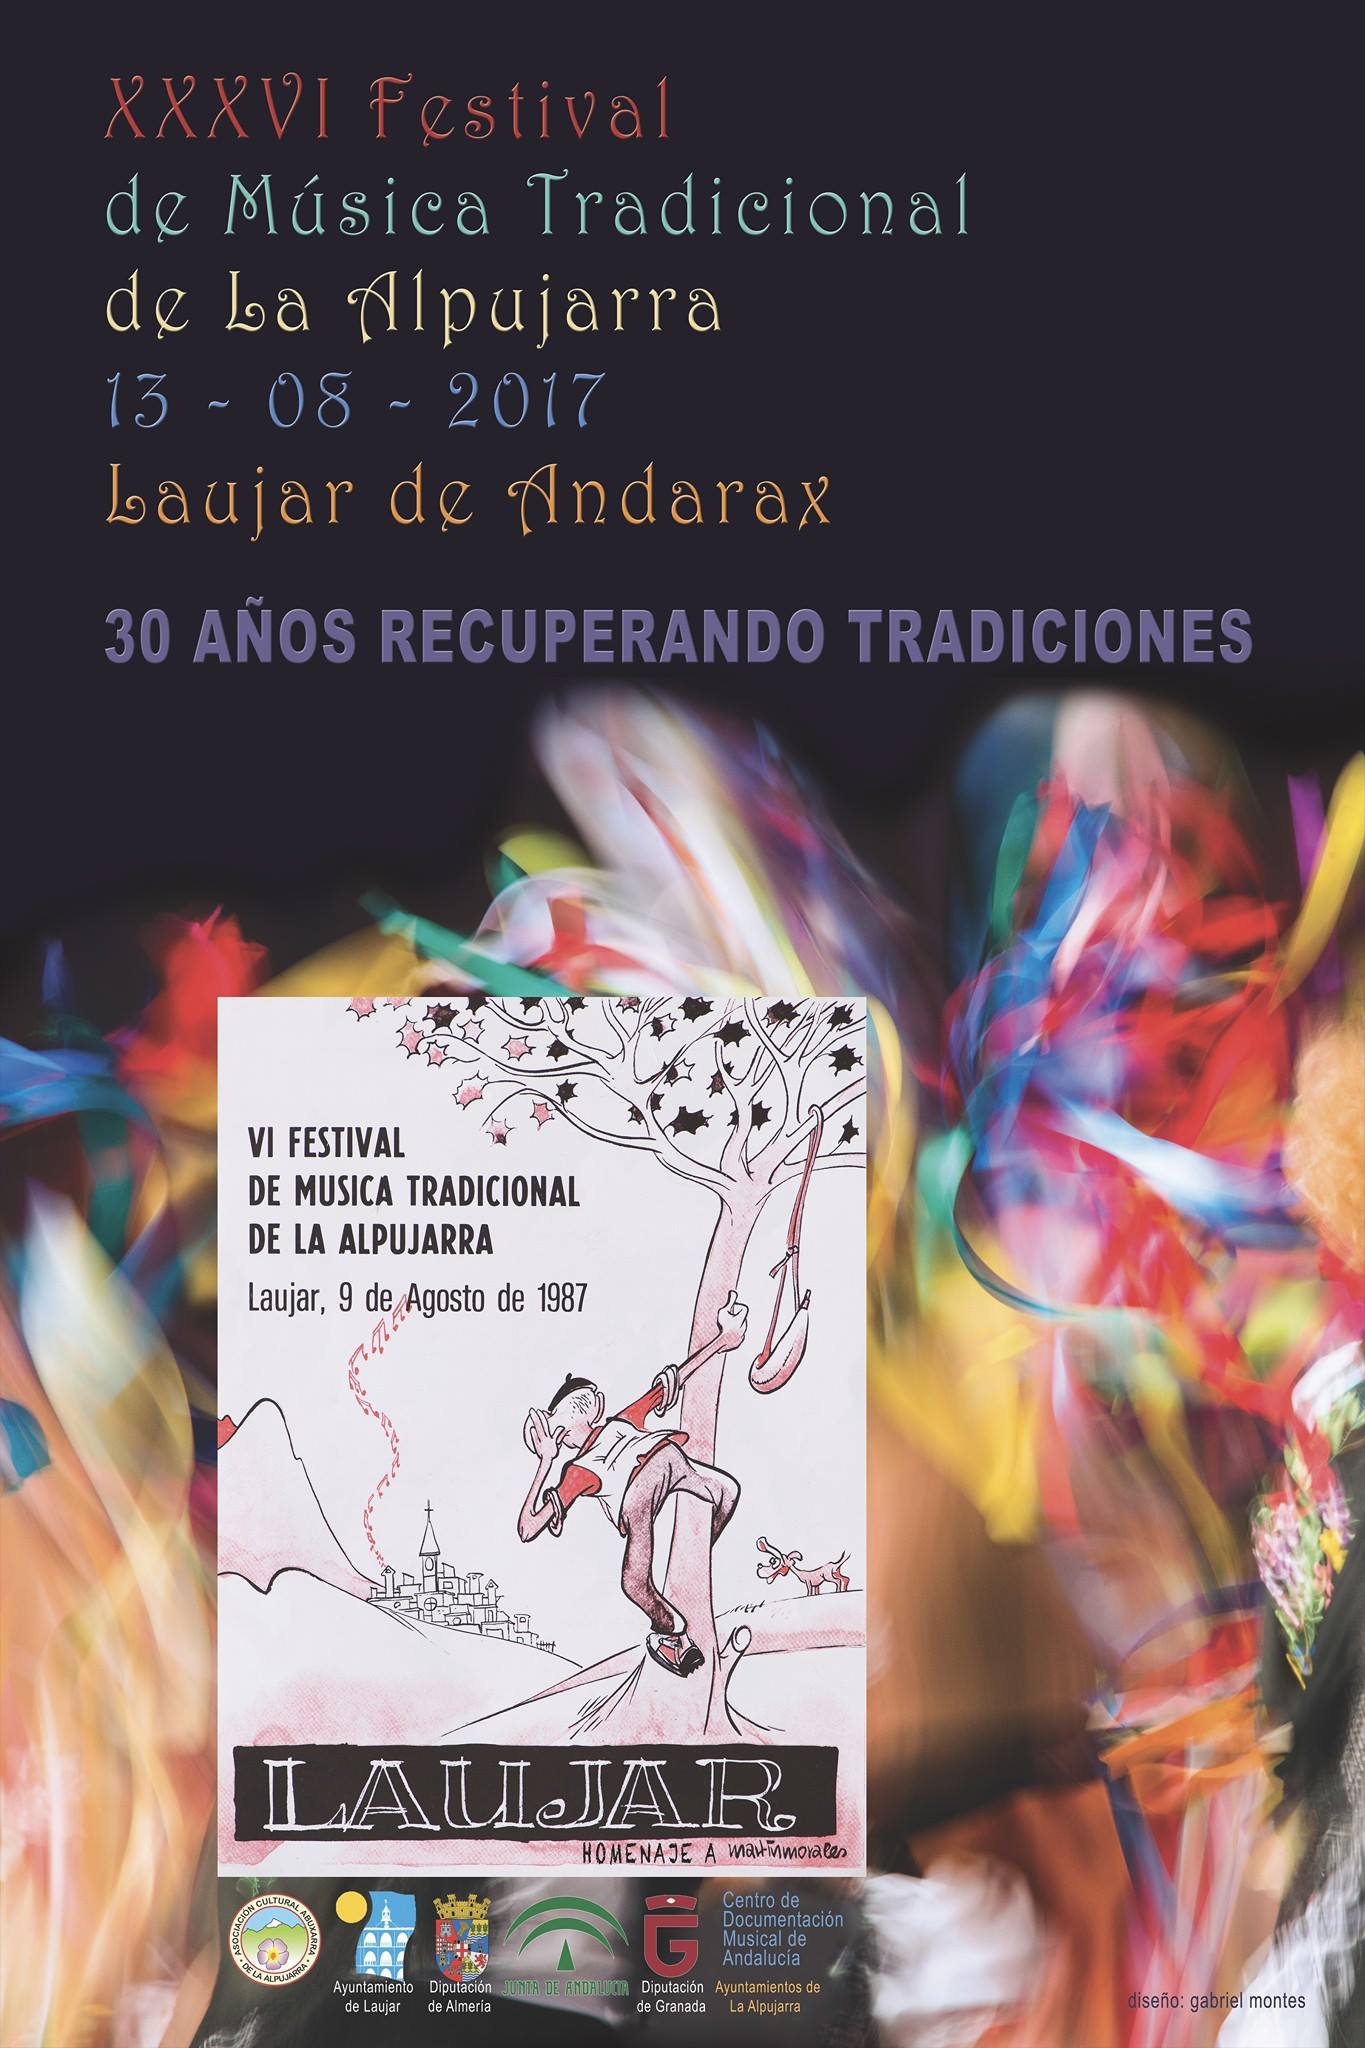 XXXVI Festival de Música Tradicional de la Alpujarra